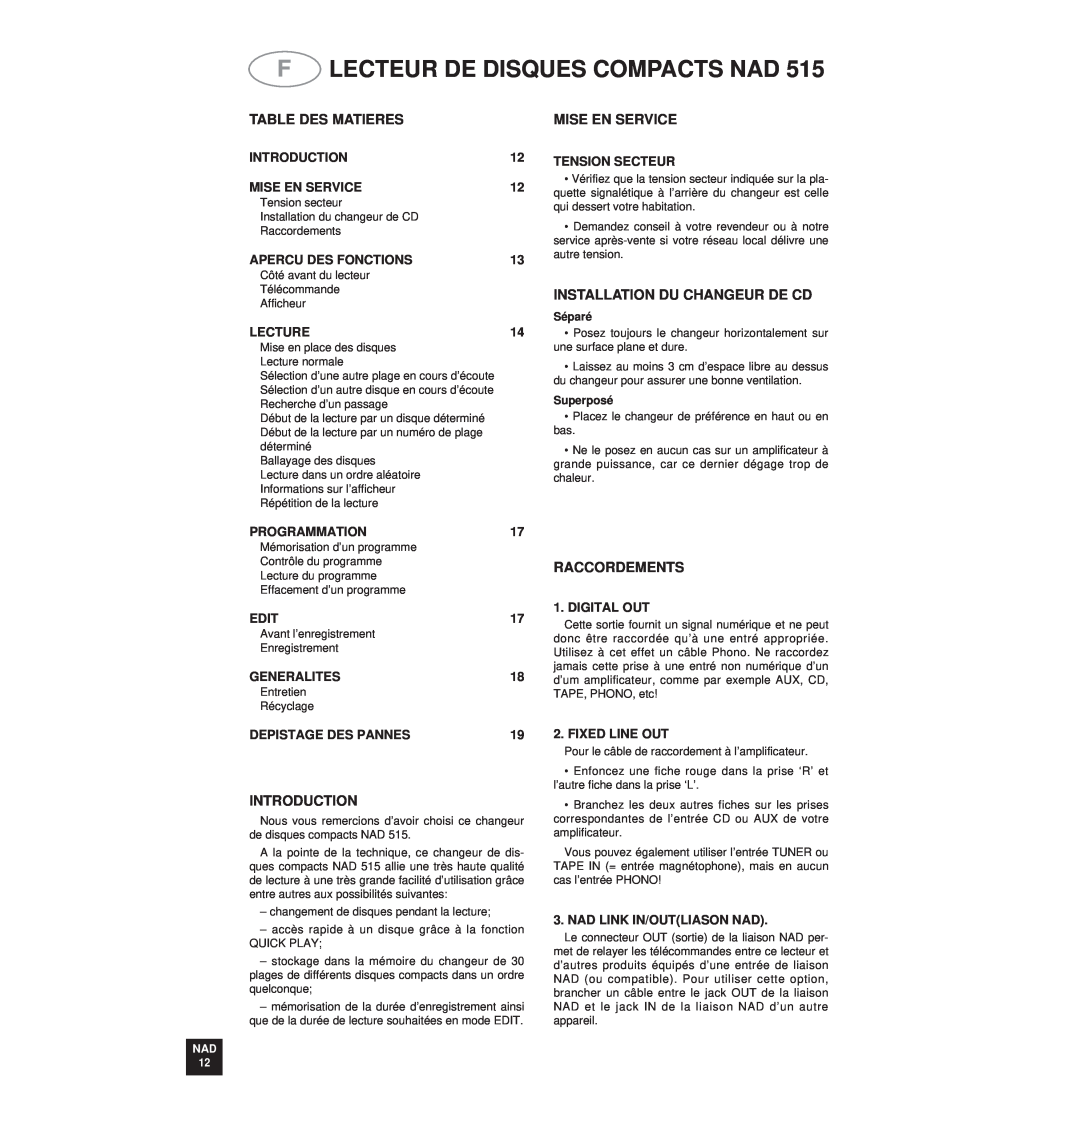 NAD 515 Flecteur De Disques Compacts Nad, Table Des Matieres, Installation Du Changeur De Cd, Raccordements, Lecture, Edit 